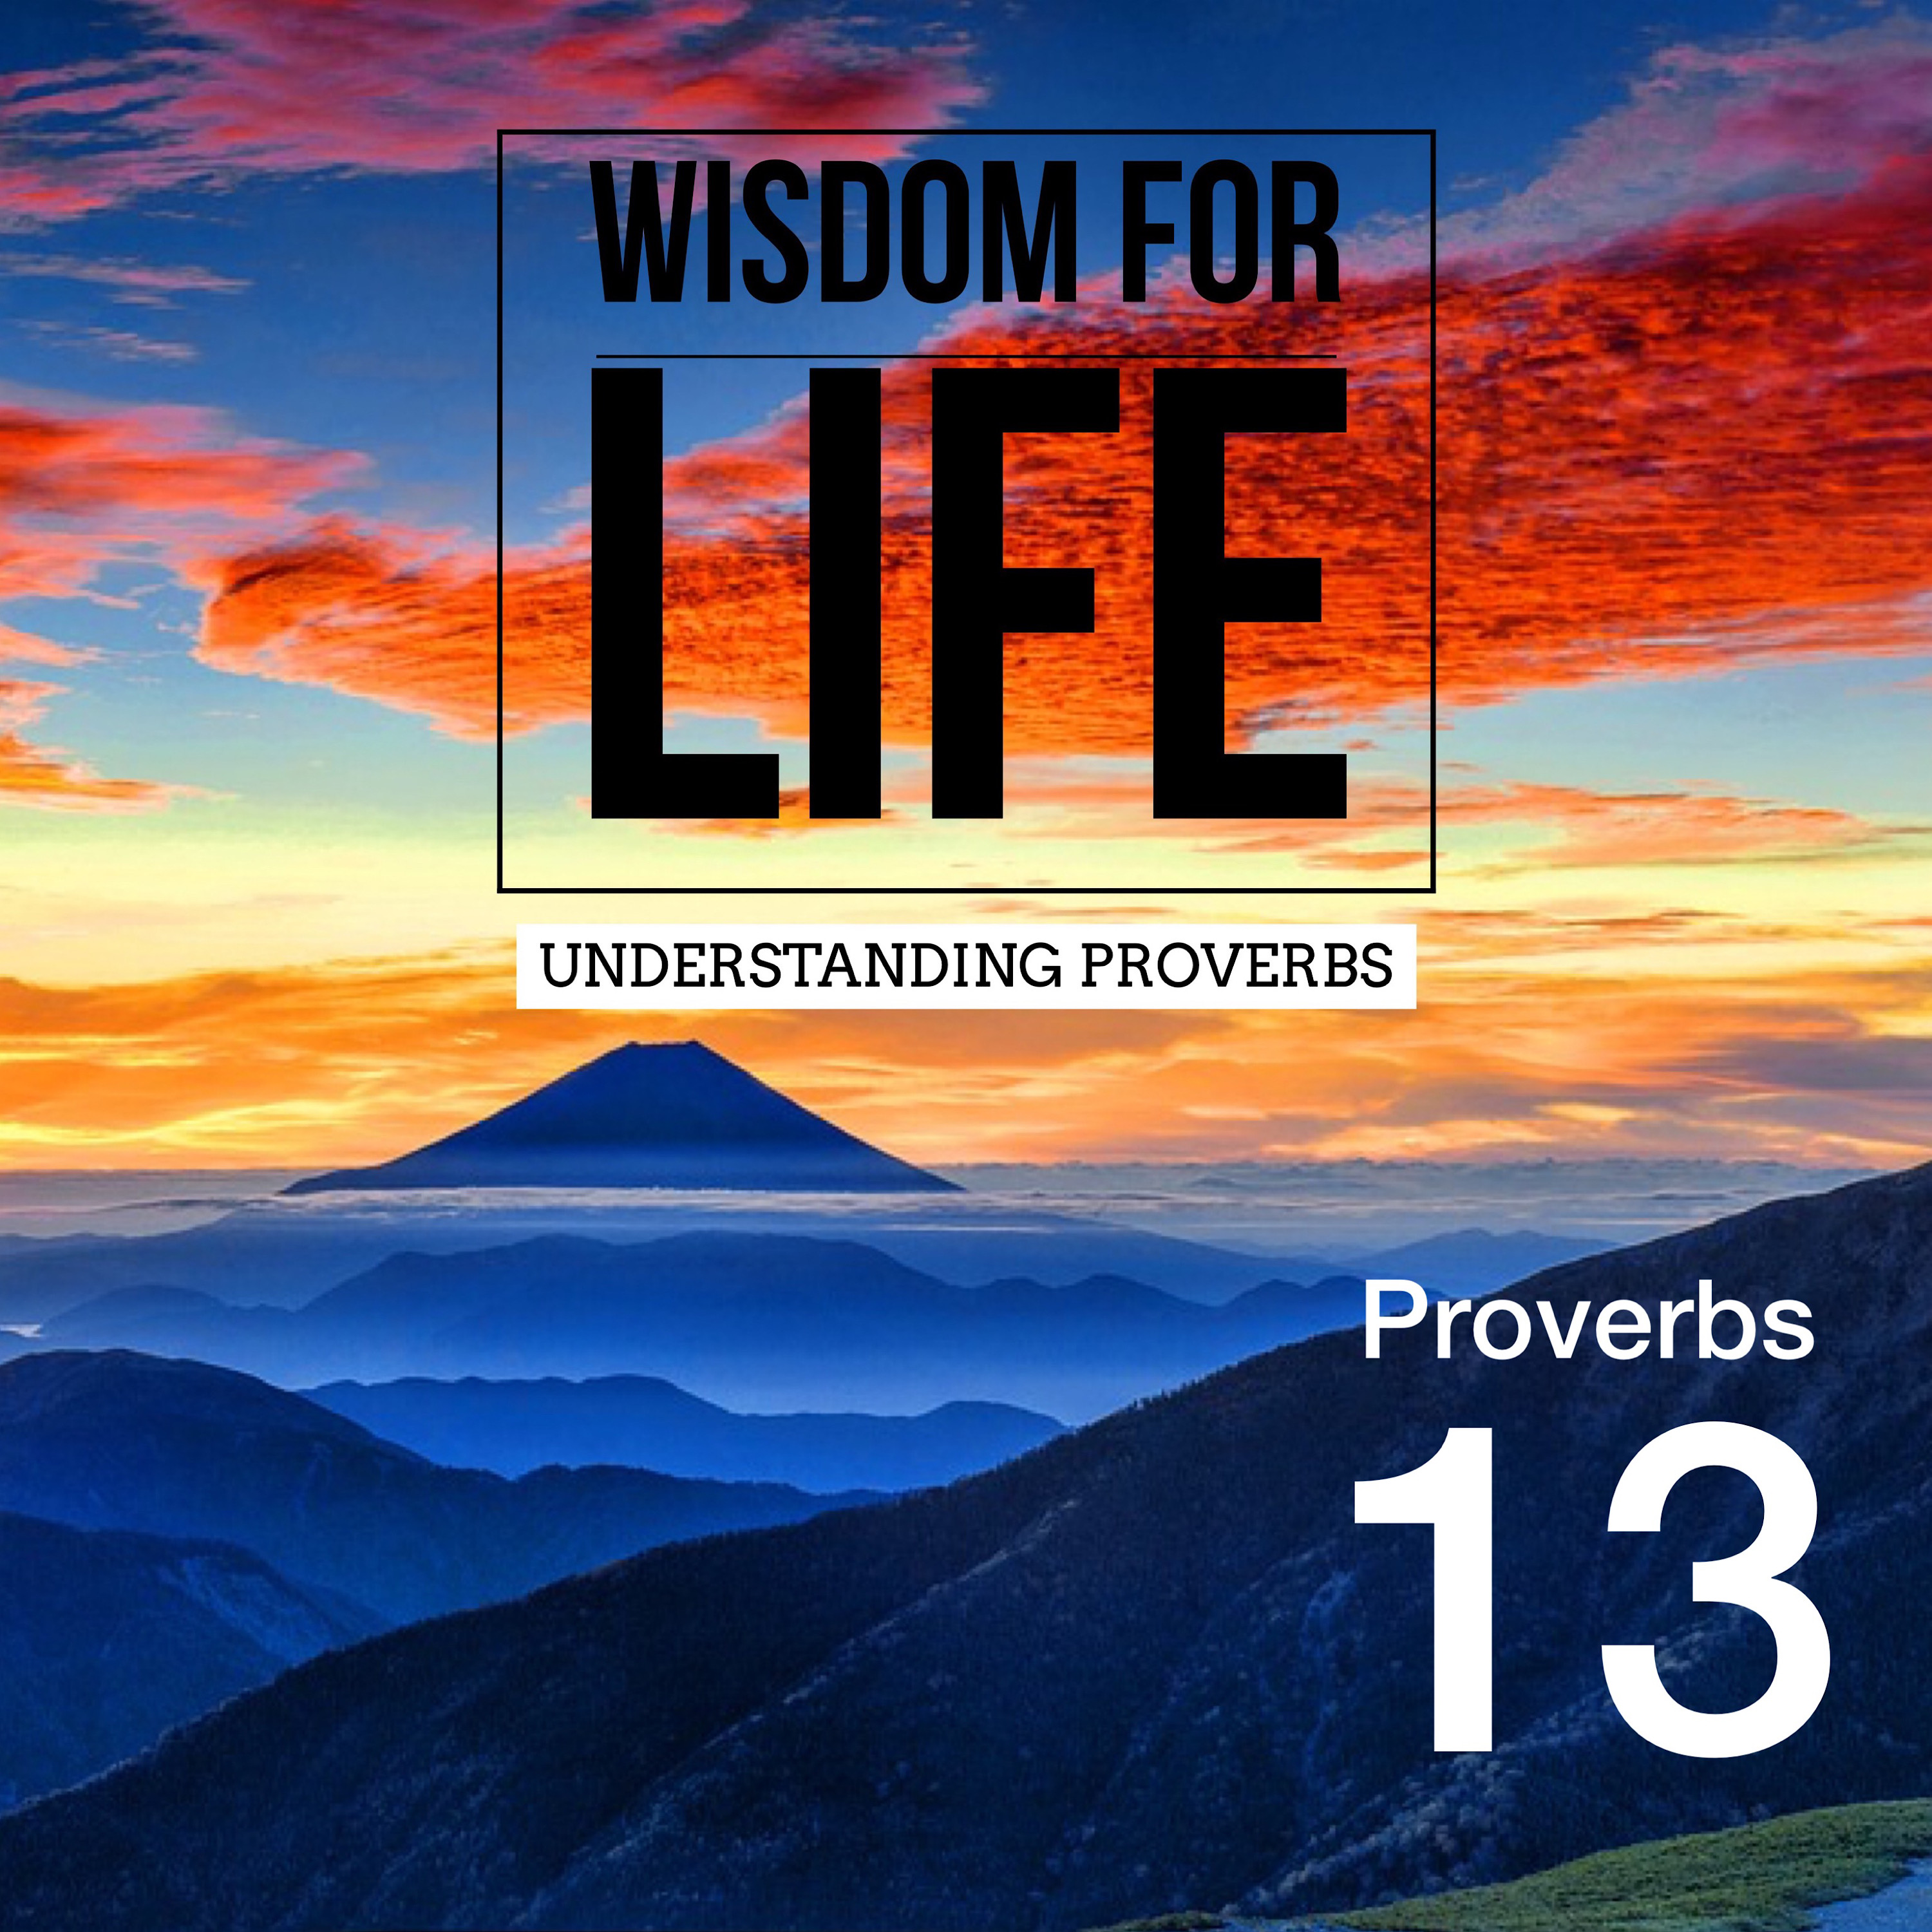 UNDERSTANDING PROVERBS 13